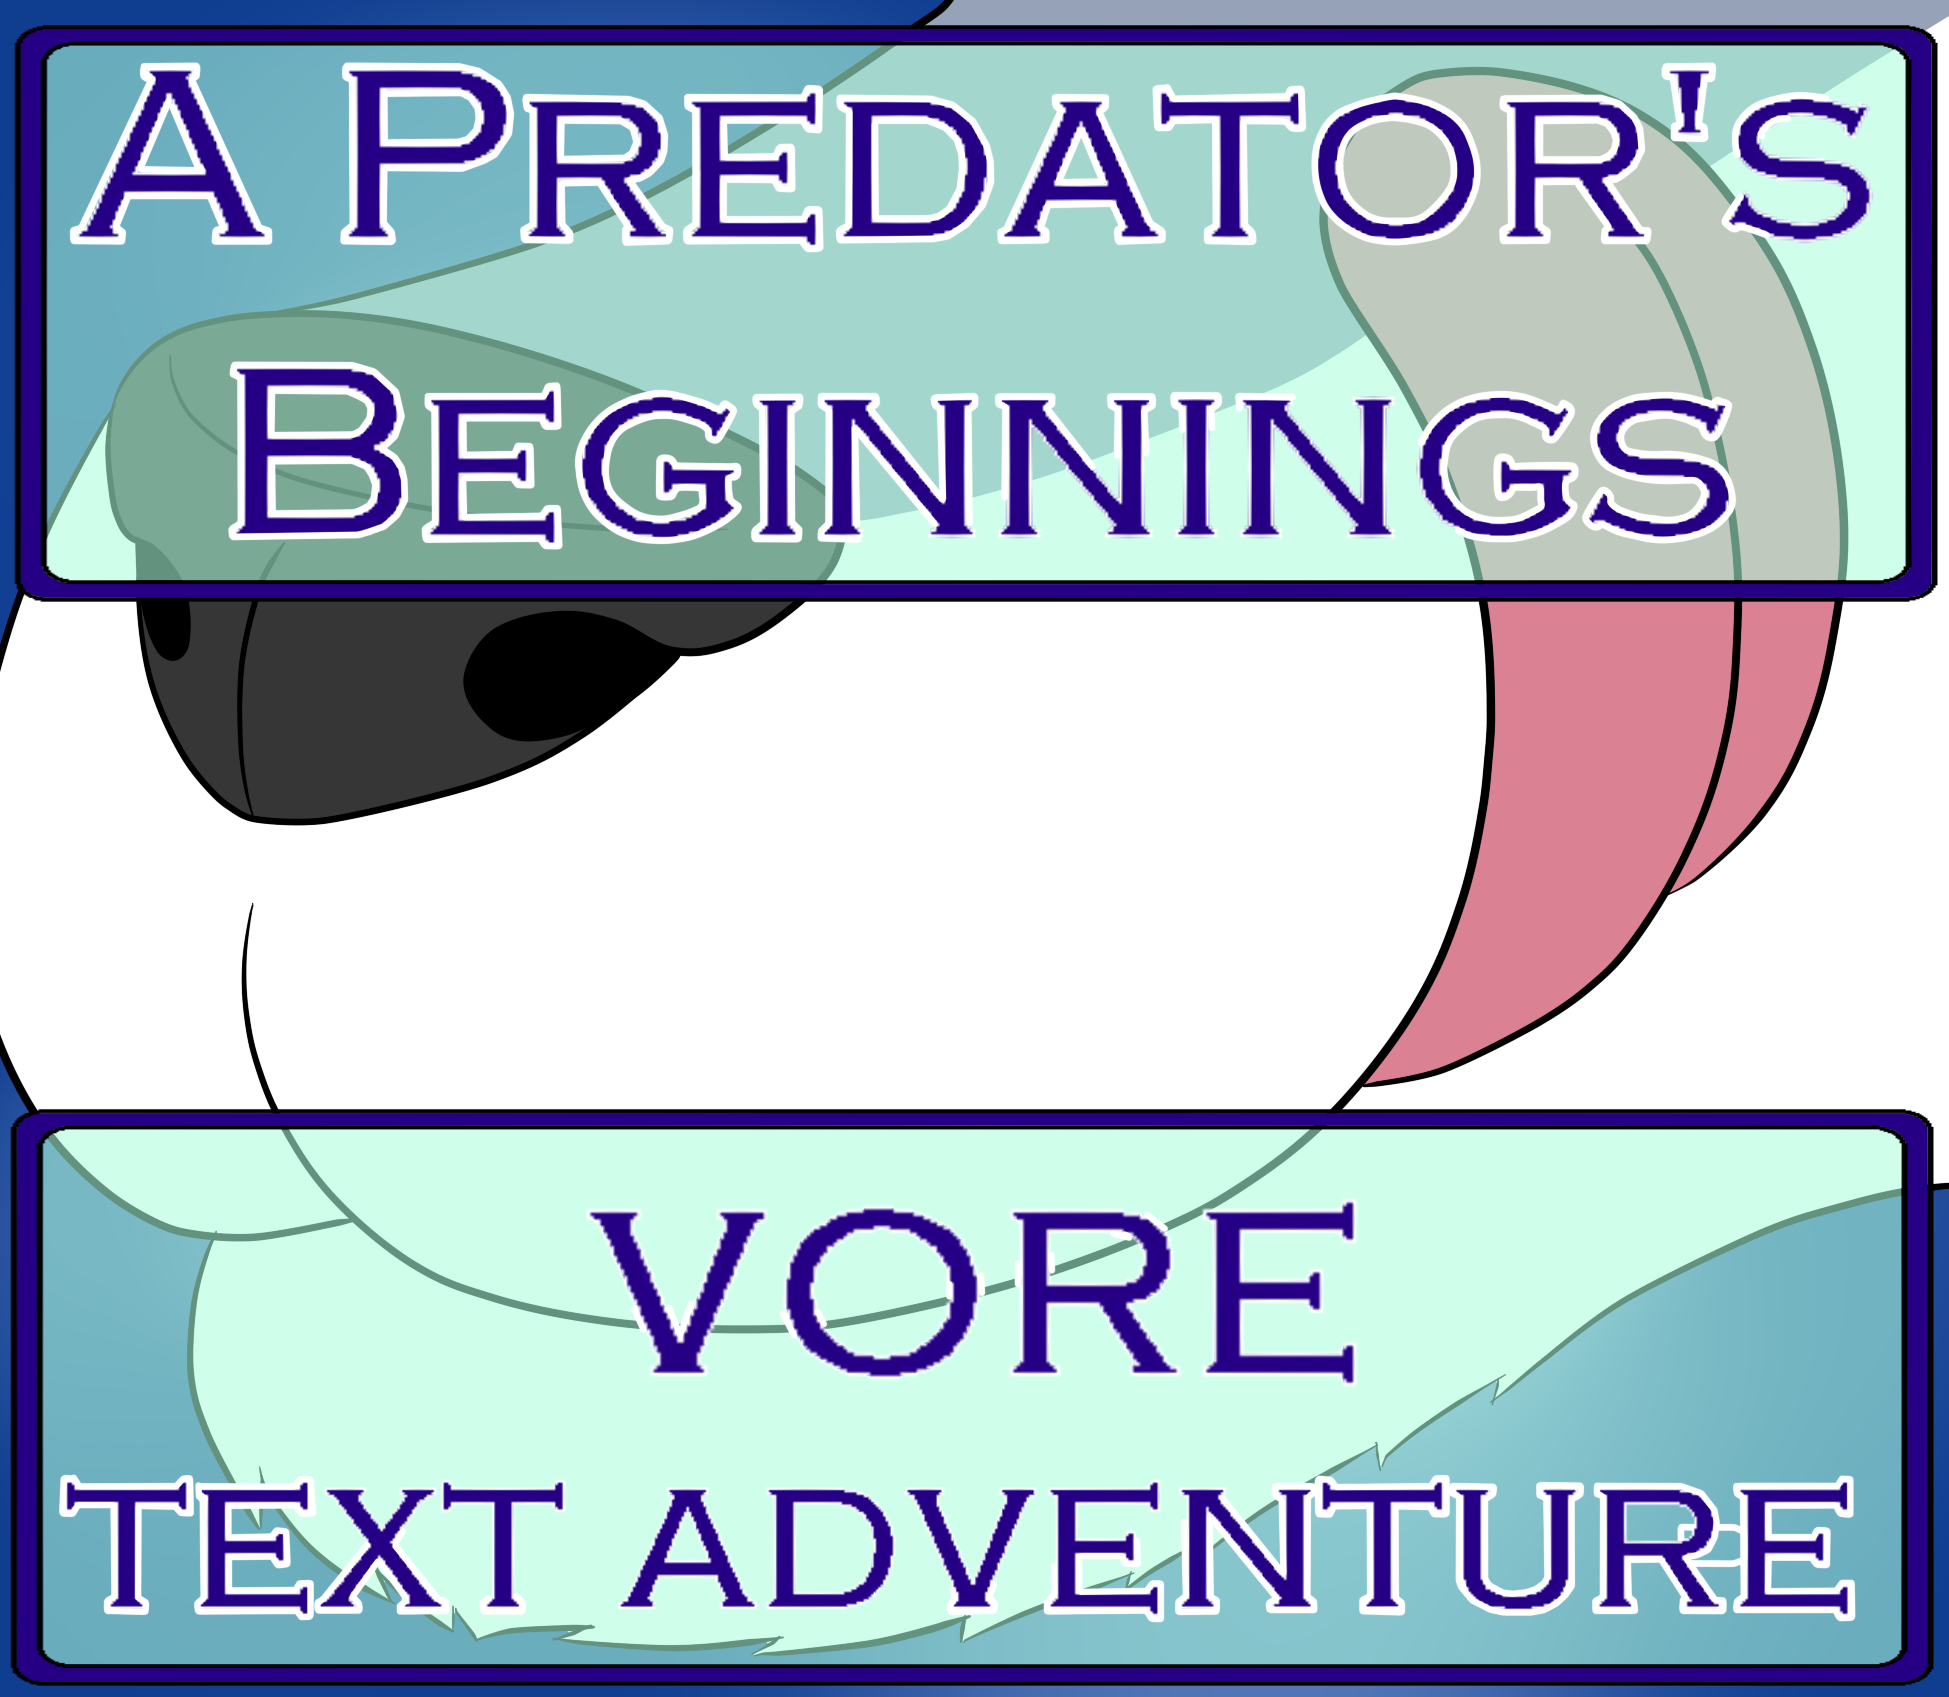 A Predator's Beginnings